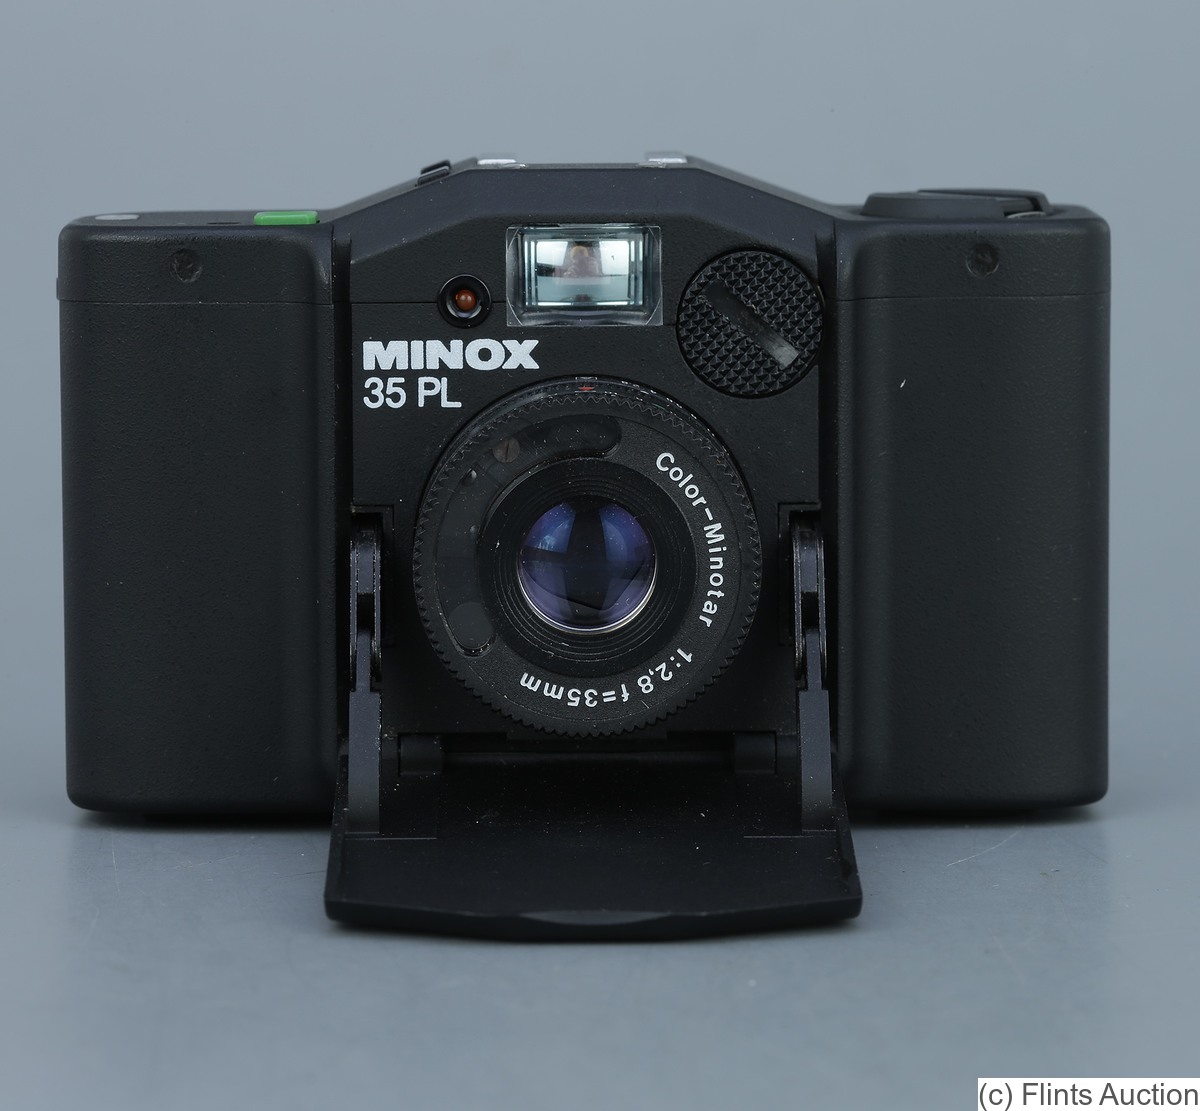 Minox: Minox 35 PL camera